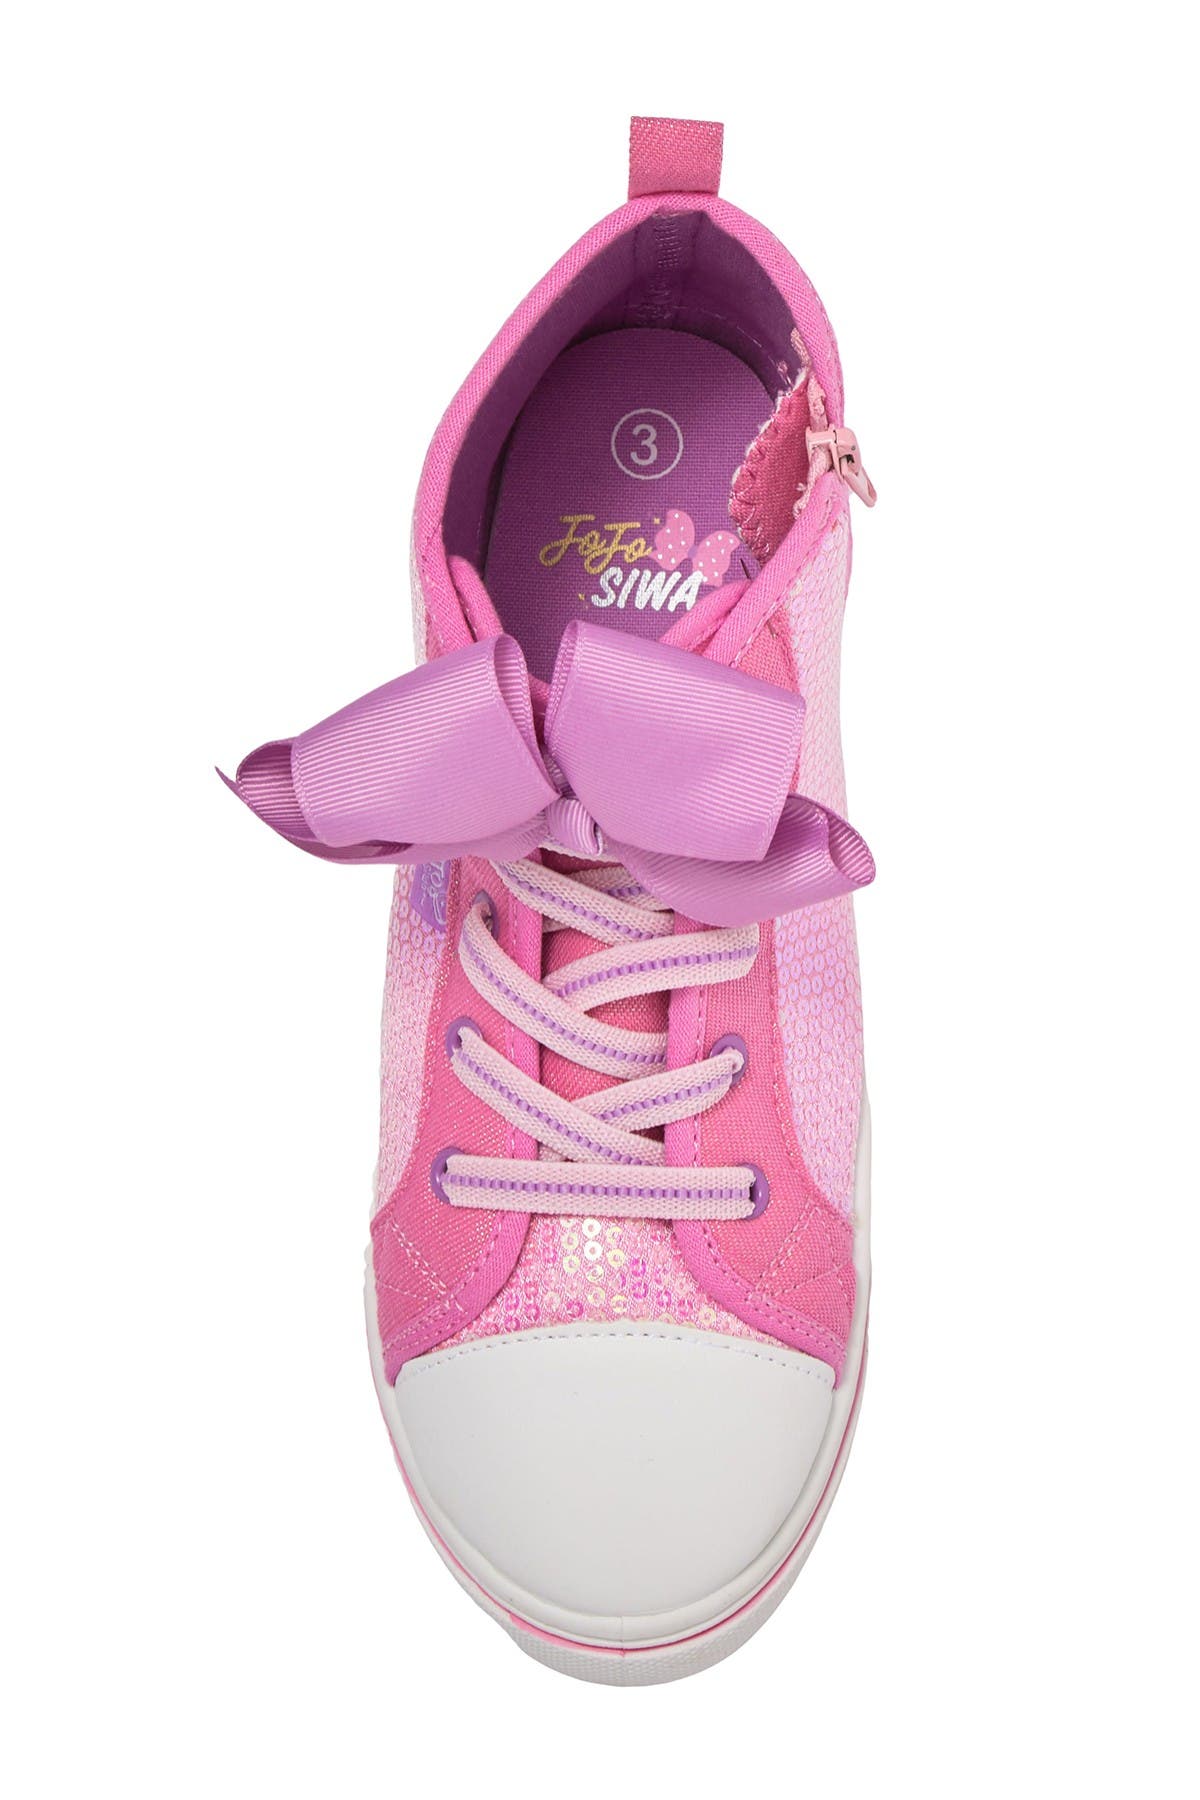 Josmo Kids' Jojo Siwa Sequin High Top Sneaker In Open Pink | ModeSens